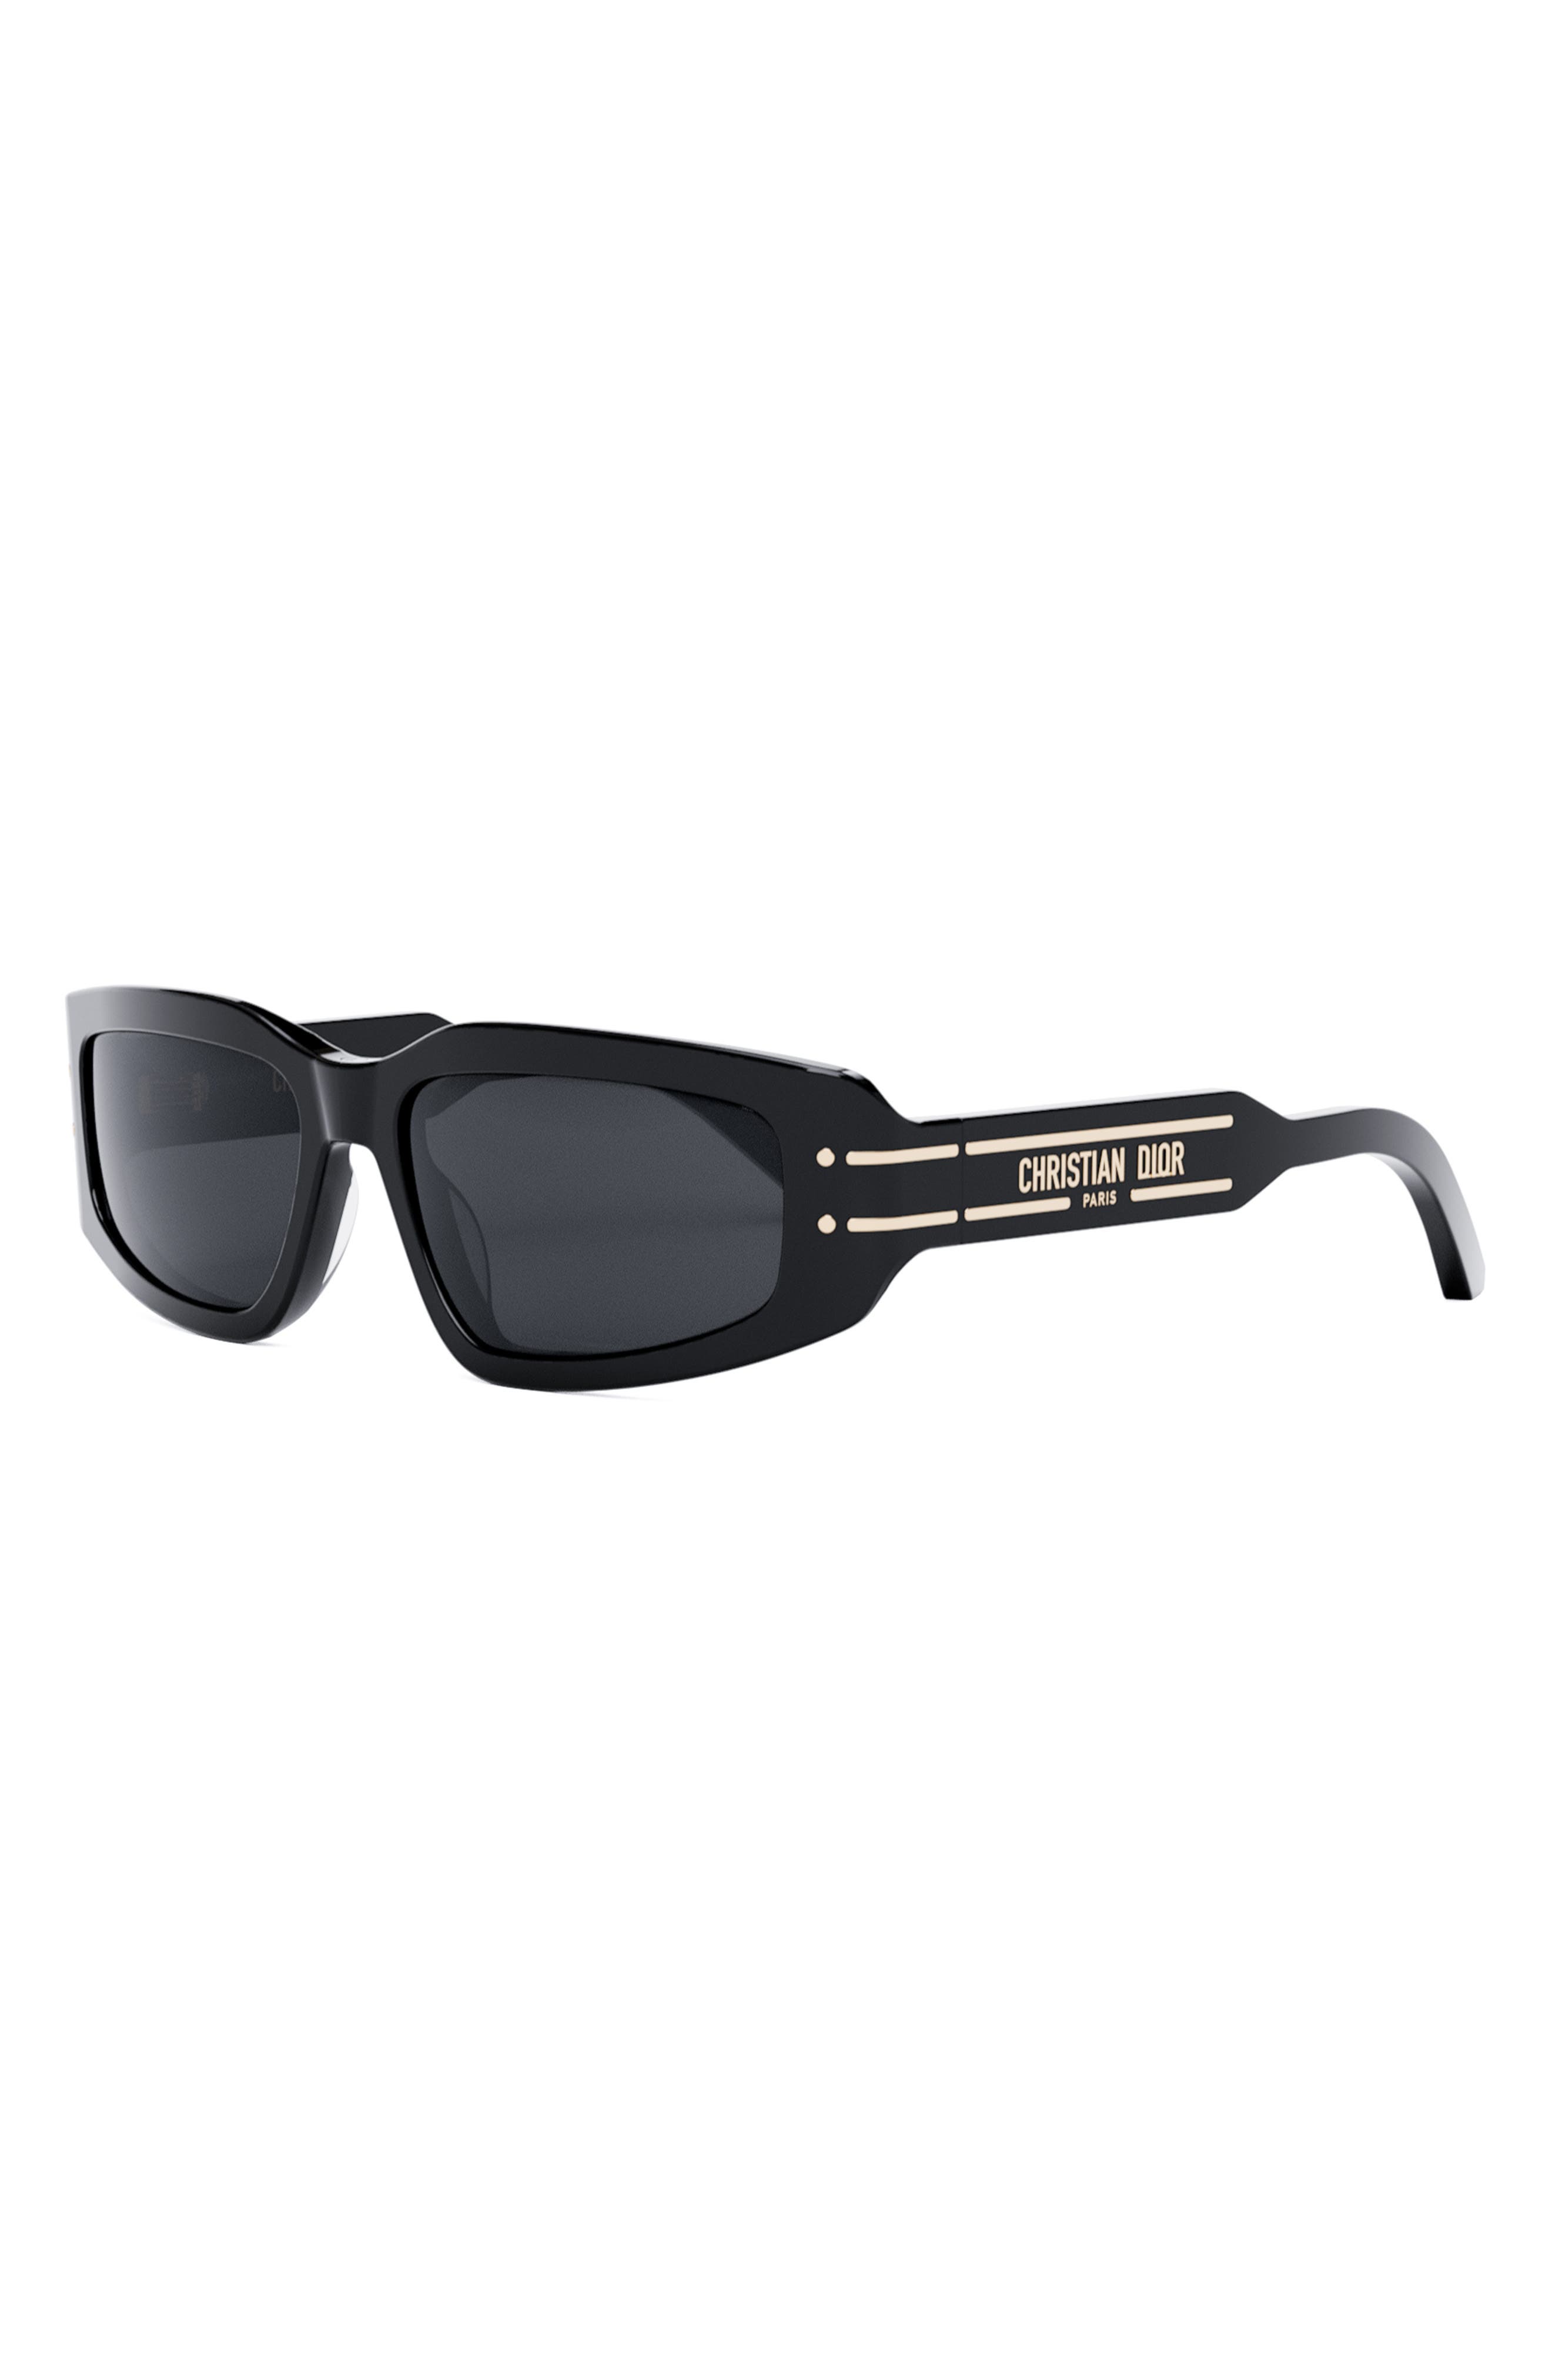 DIOR Signature S9U 55mm Square Sunglasses in Shiny Black /Smoke